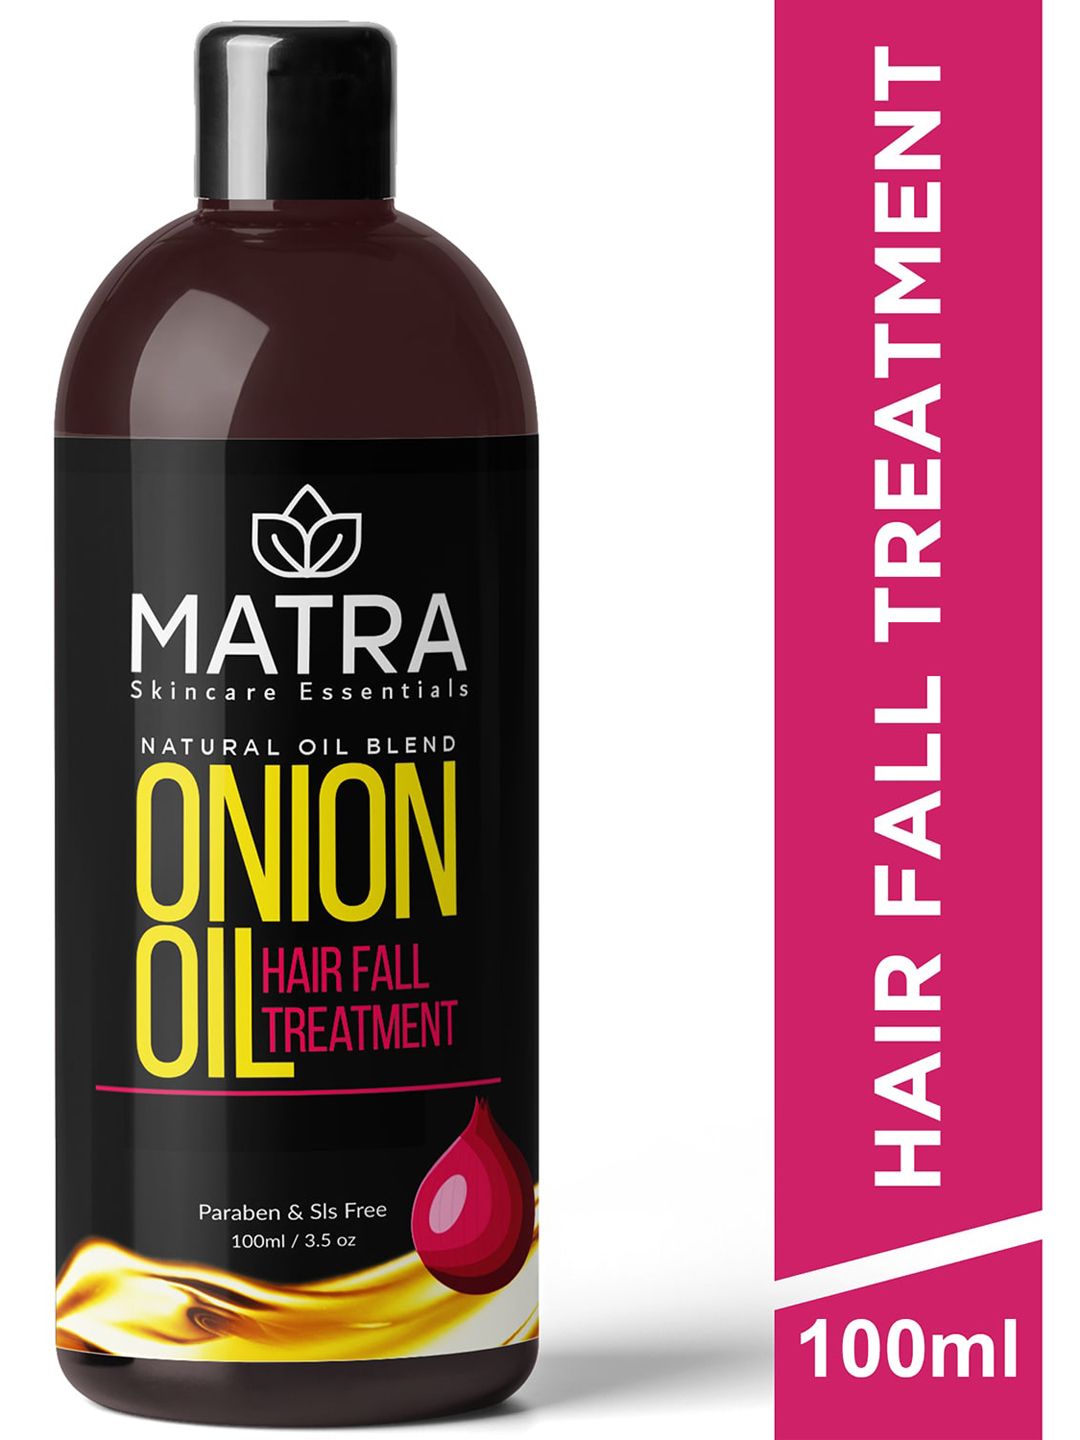 MATRA Natural Oil Blend Hair Fall Treatment Onion Hair Growth Oil - 100 ml Price in India